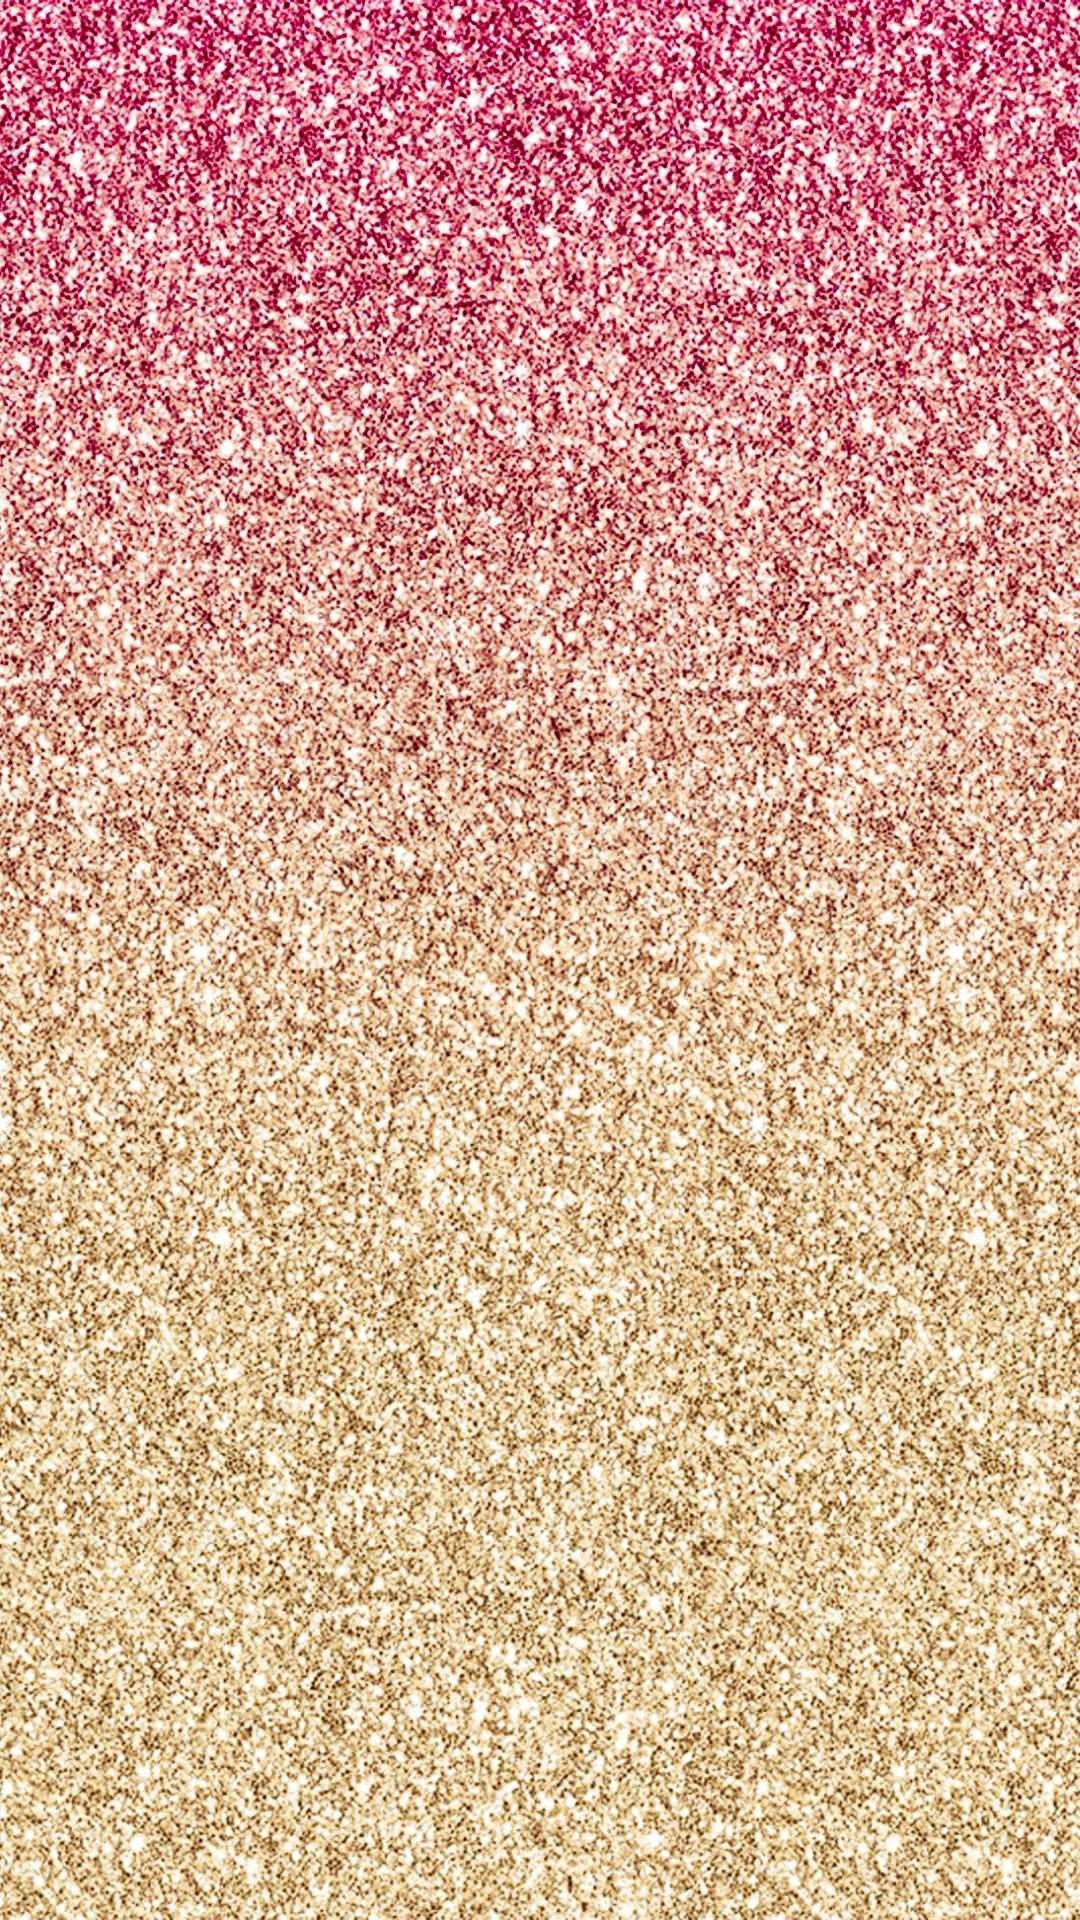 Pink Og Guld Glitter Sparkle Iphone Wallpaper